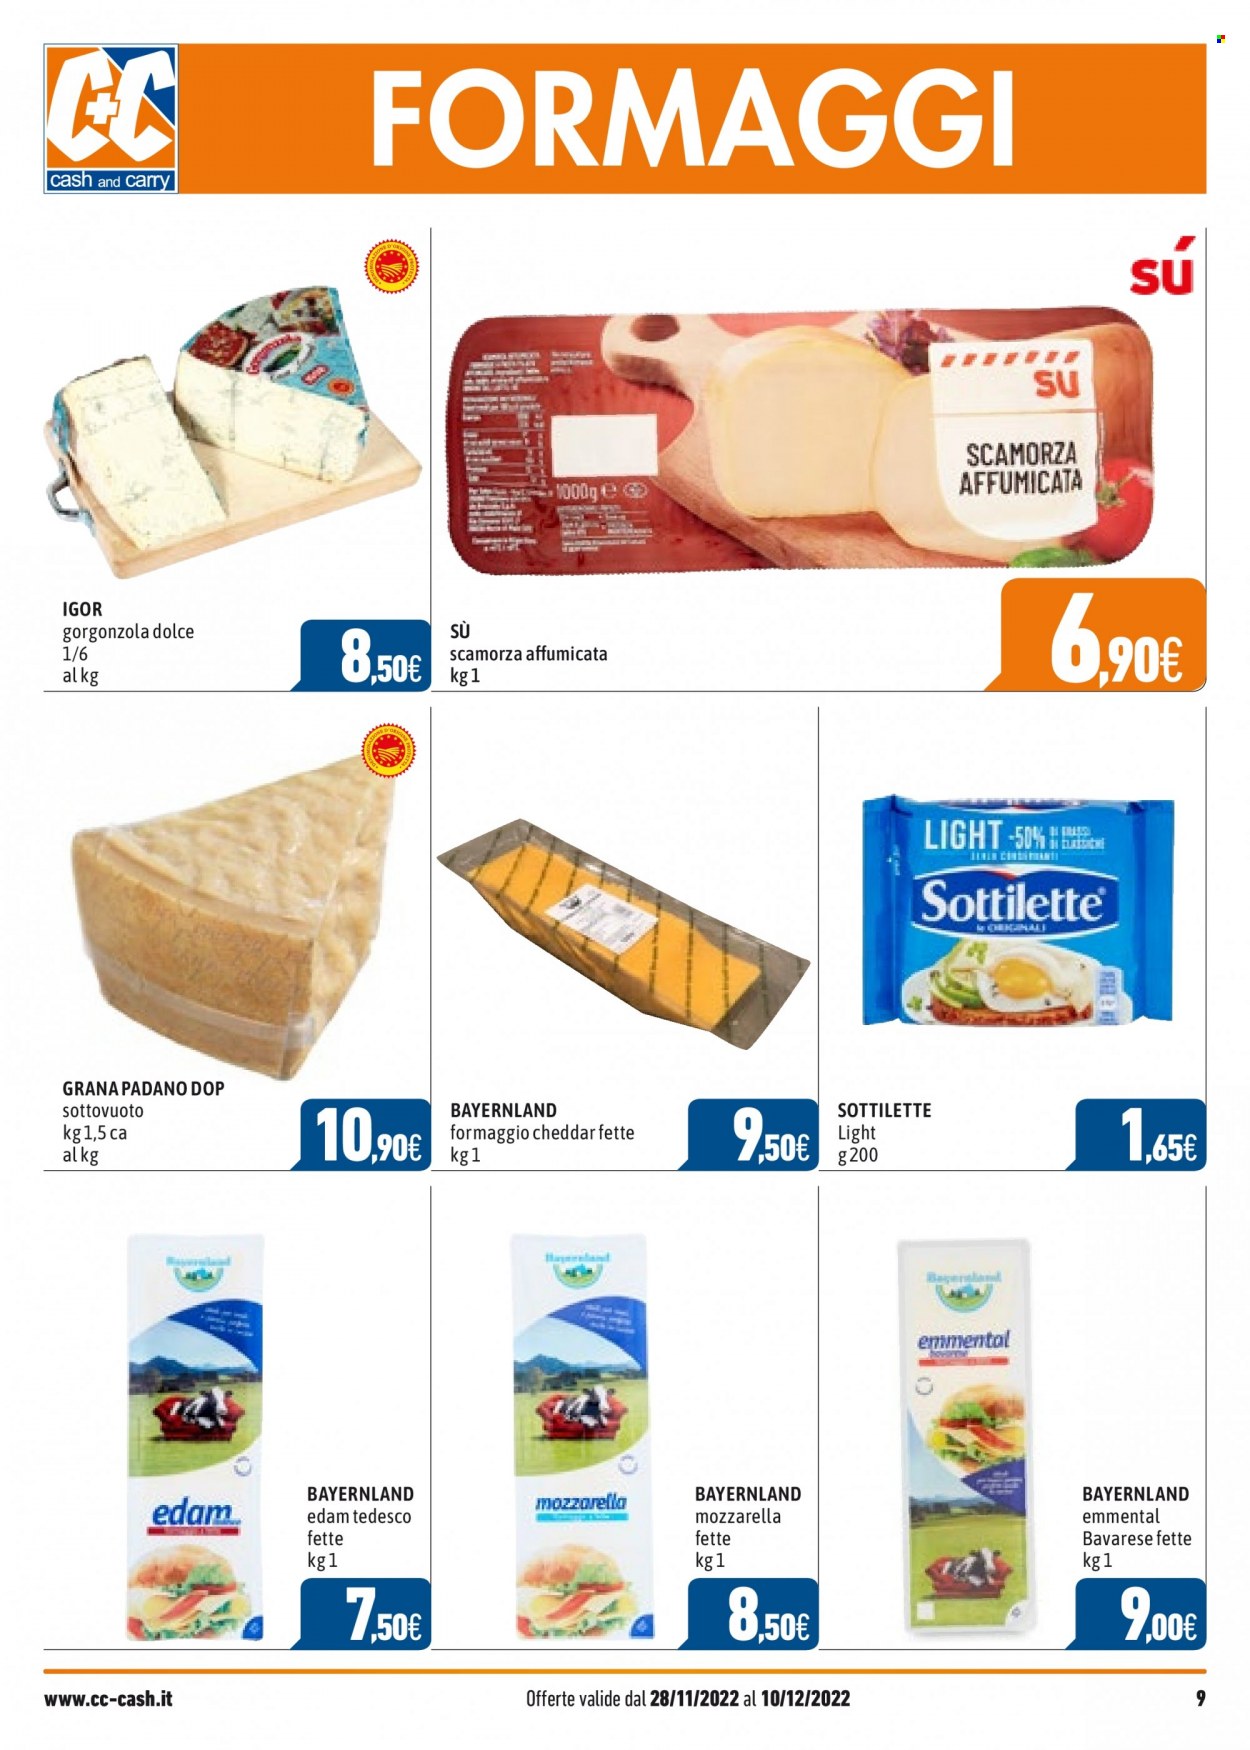 thumbnail - Volantino C+C Cash & Carry - 28/11/2022 - 10/12/2022 - Prodotti in offerta - formaggio, mozzarella, edam, emmental, scamorza, Sottilette, cheddar, gorgonzola, Grana Padano. Pagina 9.